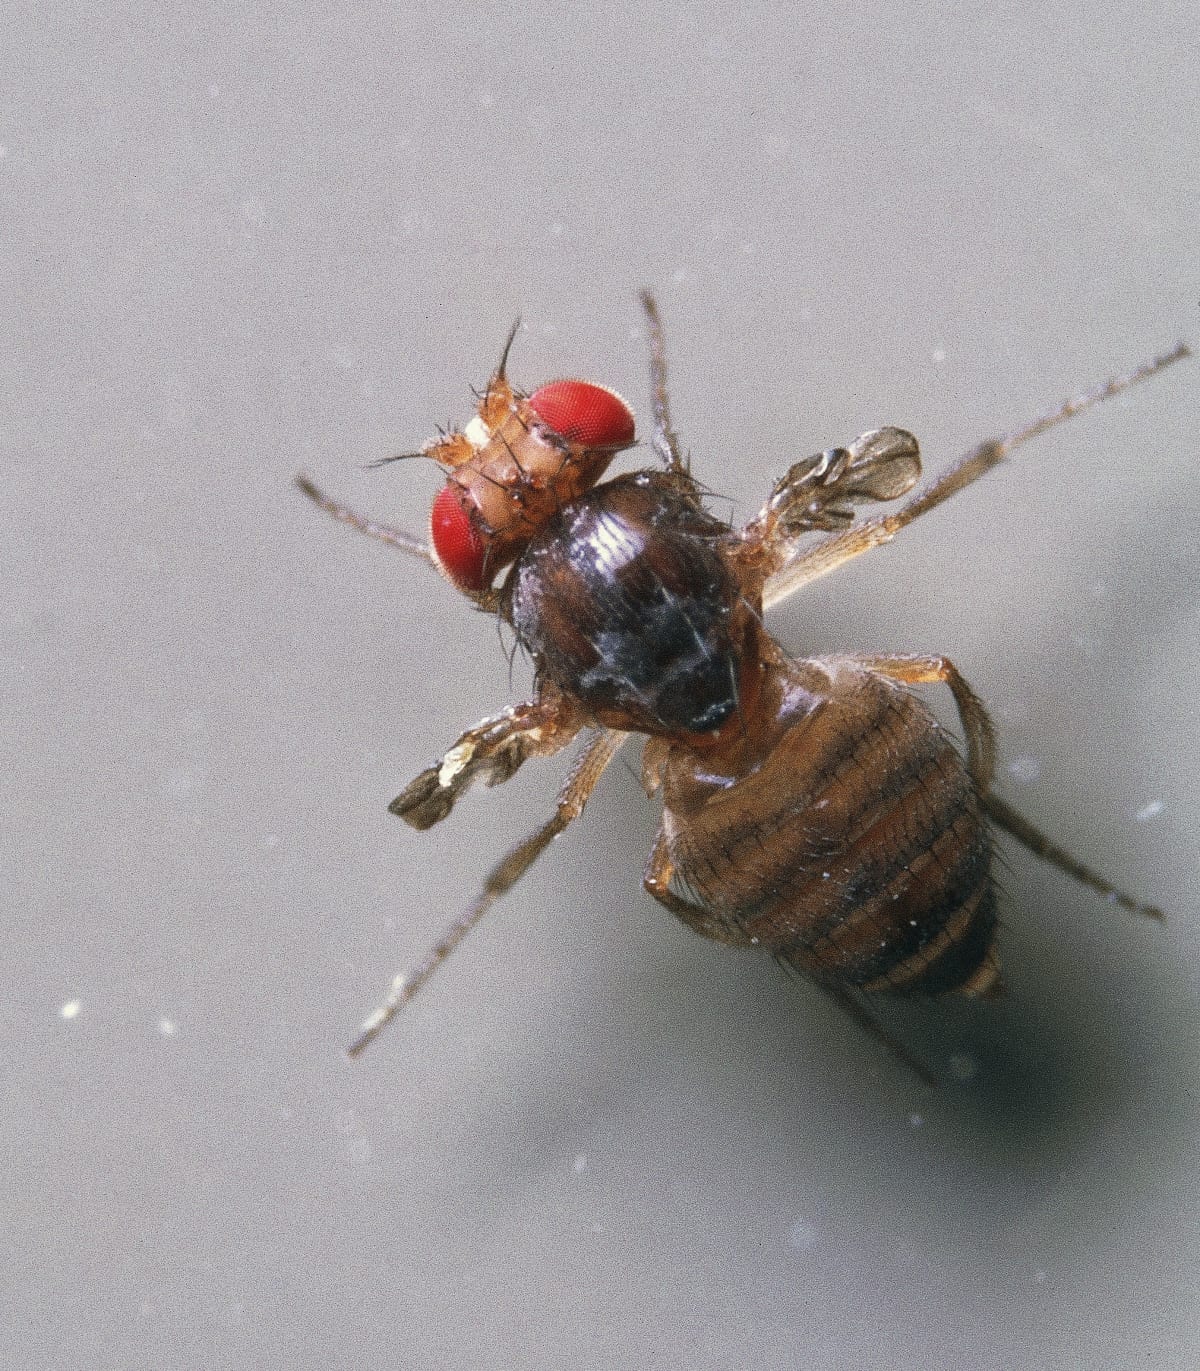 Common Fruit Fly or Vinegar Fly (Drosophila melanogaster), Diptera. (Photo by DeAgostini/Getty Images)